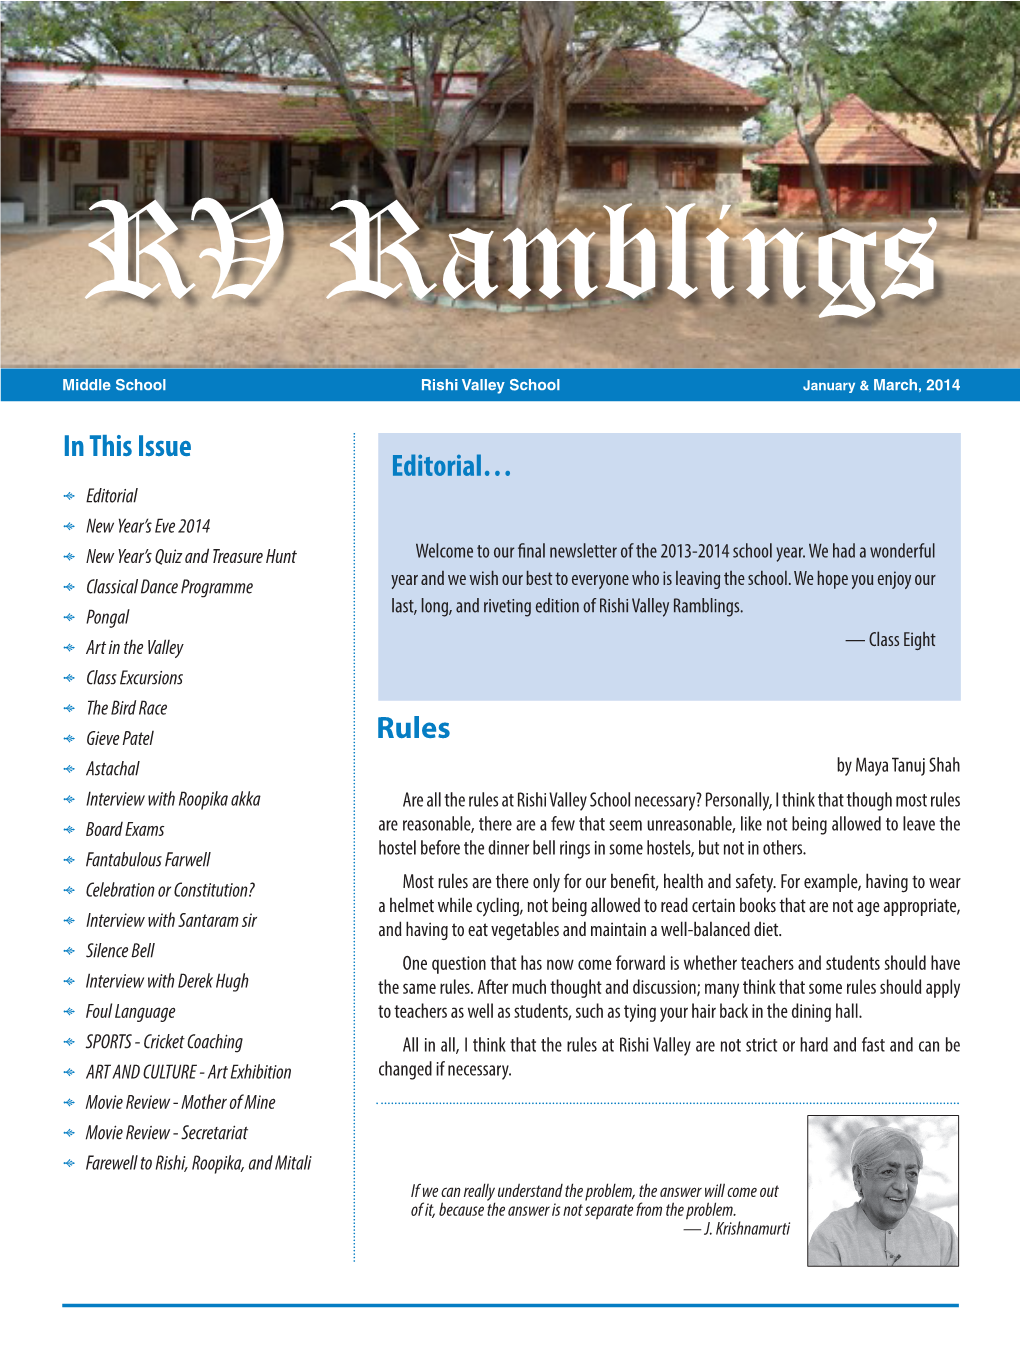 RV Ramblings :: January & March, 2014 :: 1 RV Ramblings